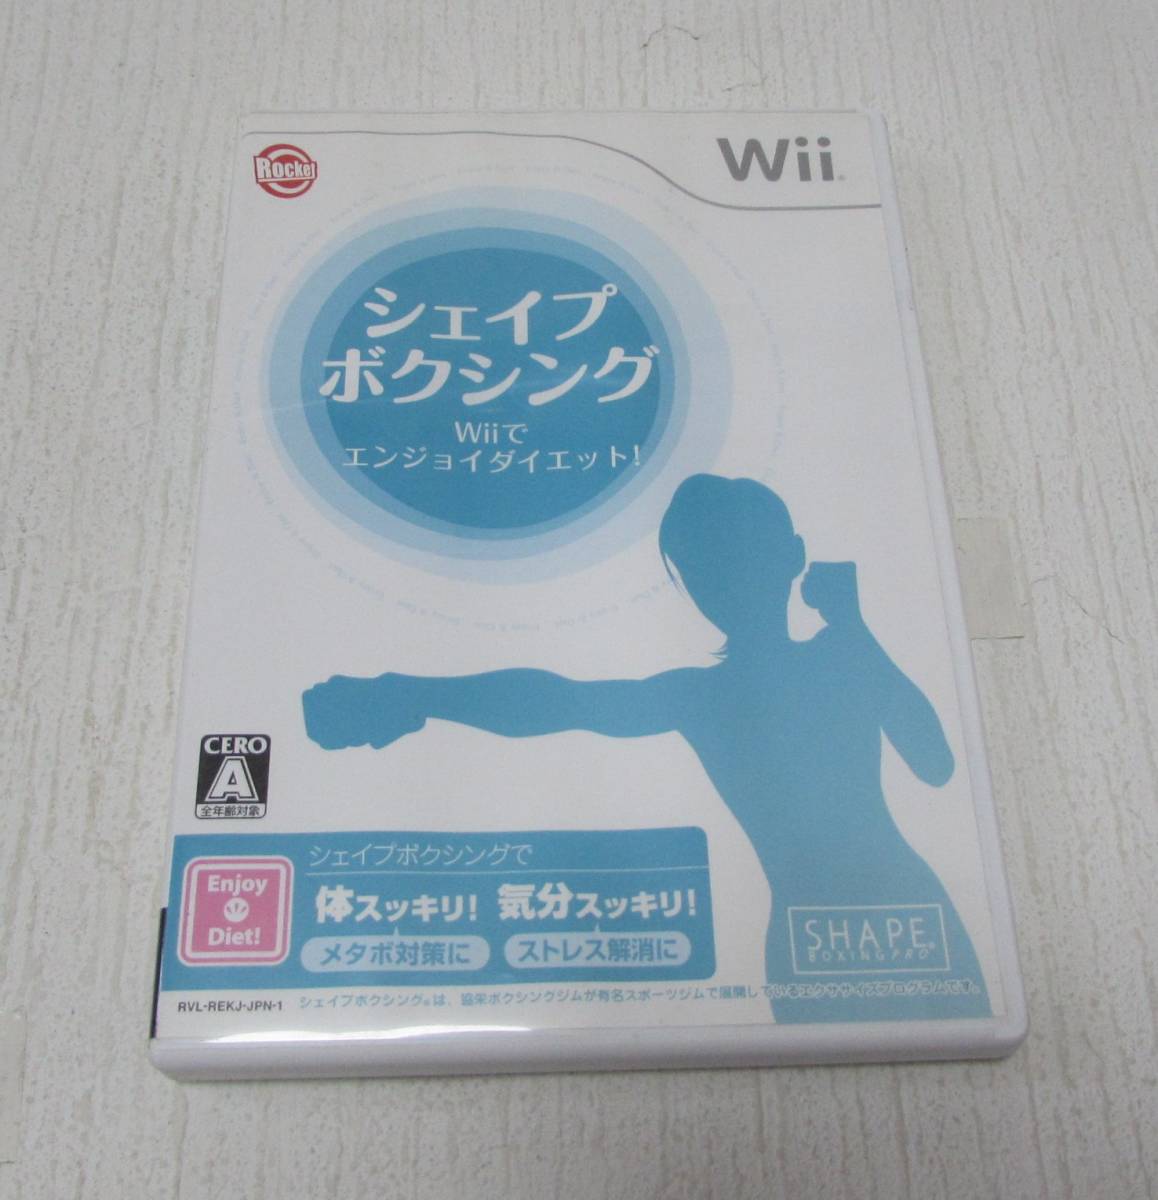 [No895] ゲームソフト Wii シェイプボクシング エンジョイダイエット 中古品_画像1